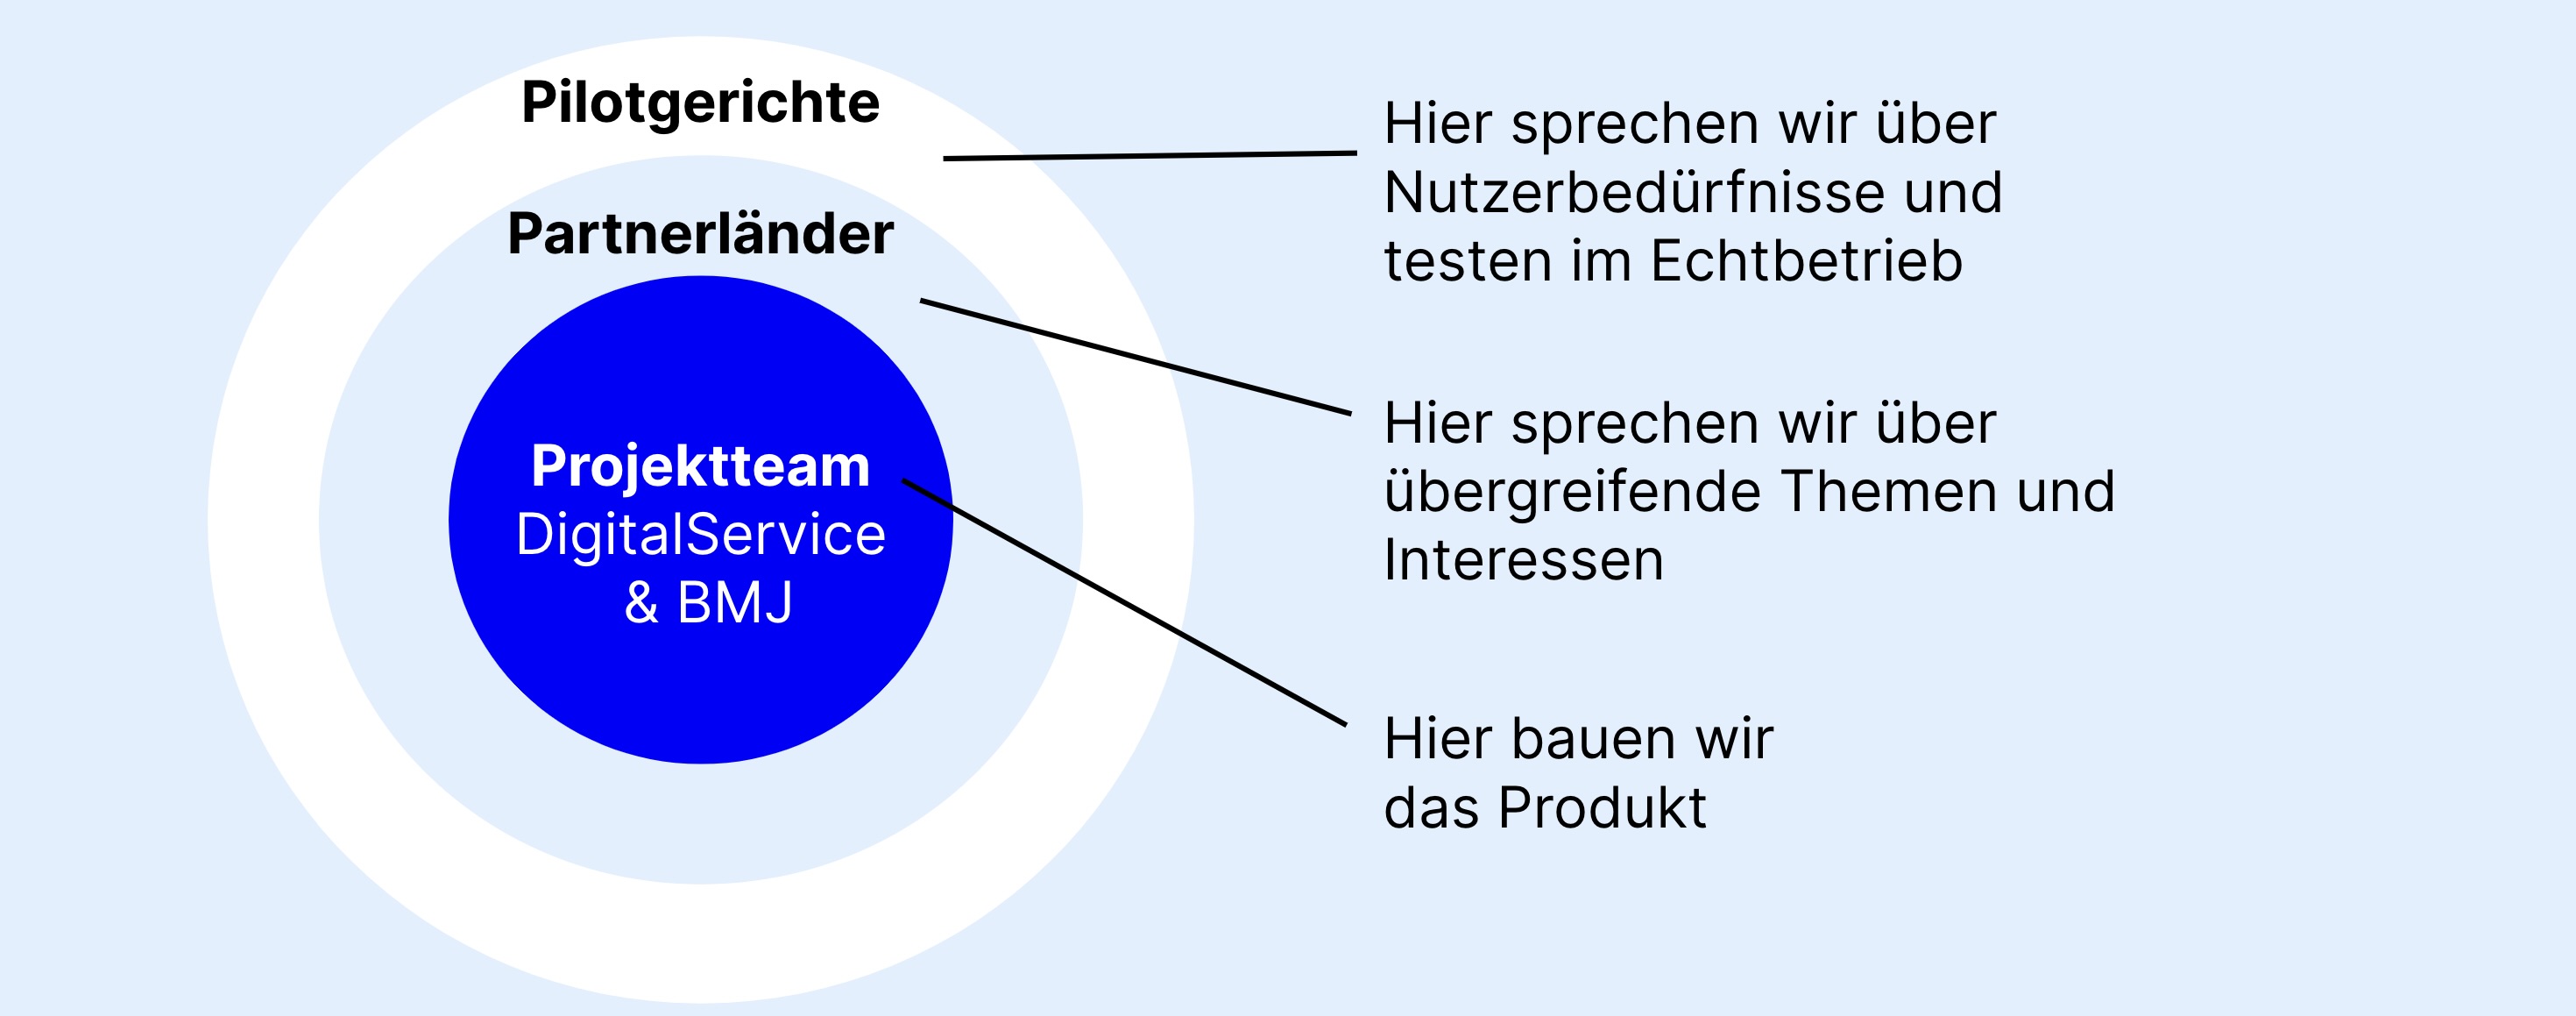 Eine Grafik mit drei in einanderliegenden Kreisen veranschaulicht das Zusammenarbeitsmodell Partizipative Produktentwicklung. Der äußerste Kreis enthält das Wort „Pilotgerichte“, der mittlere Kreis „Partnerländer“, der innerste Kreise „Projektteam DigitalService und BMJ“.